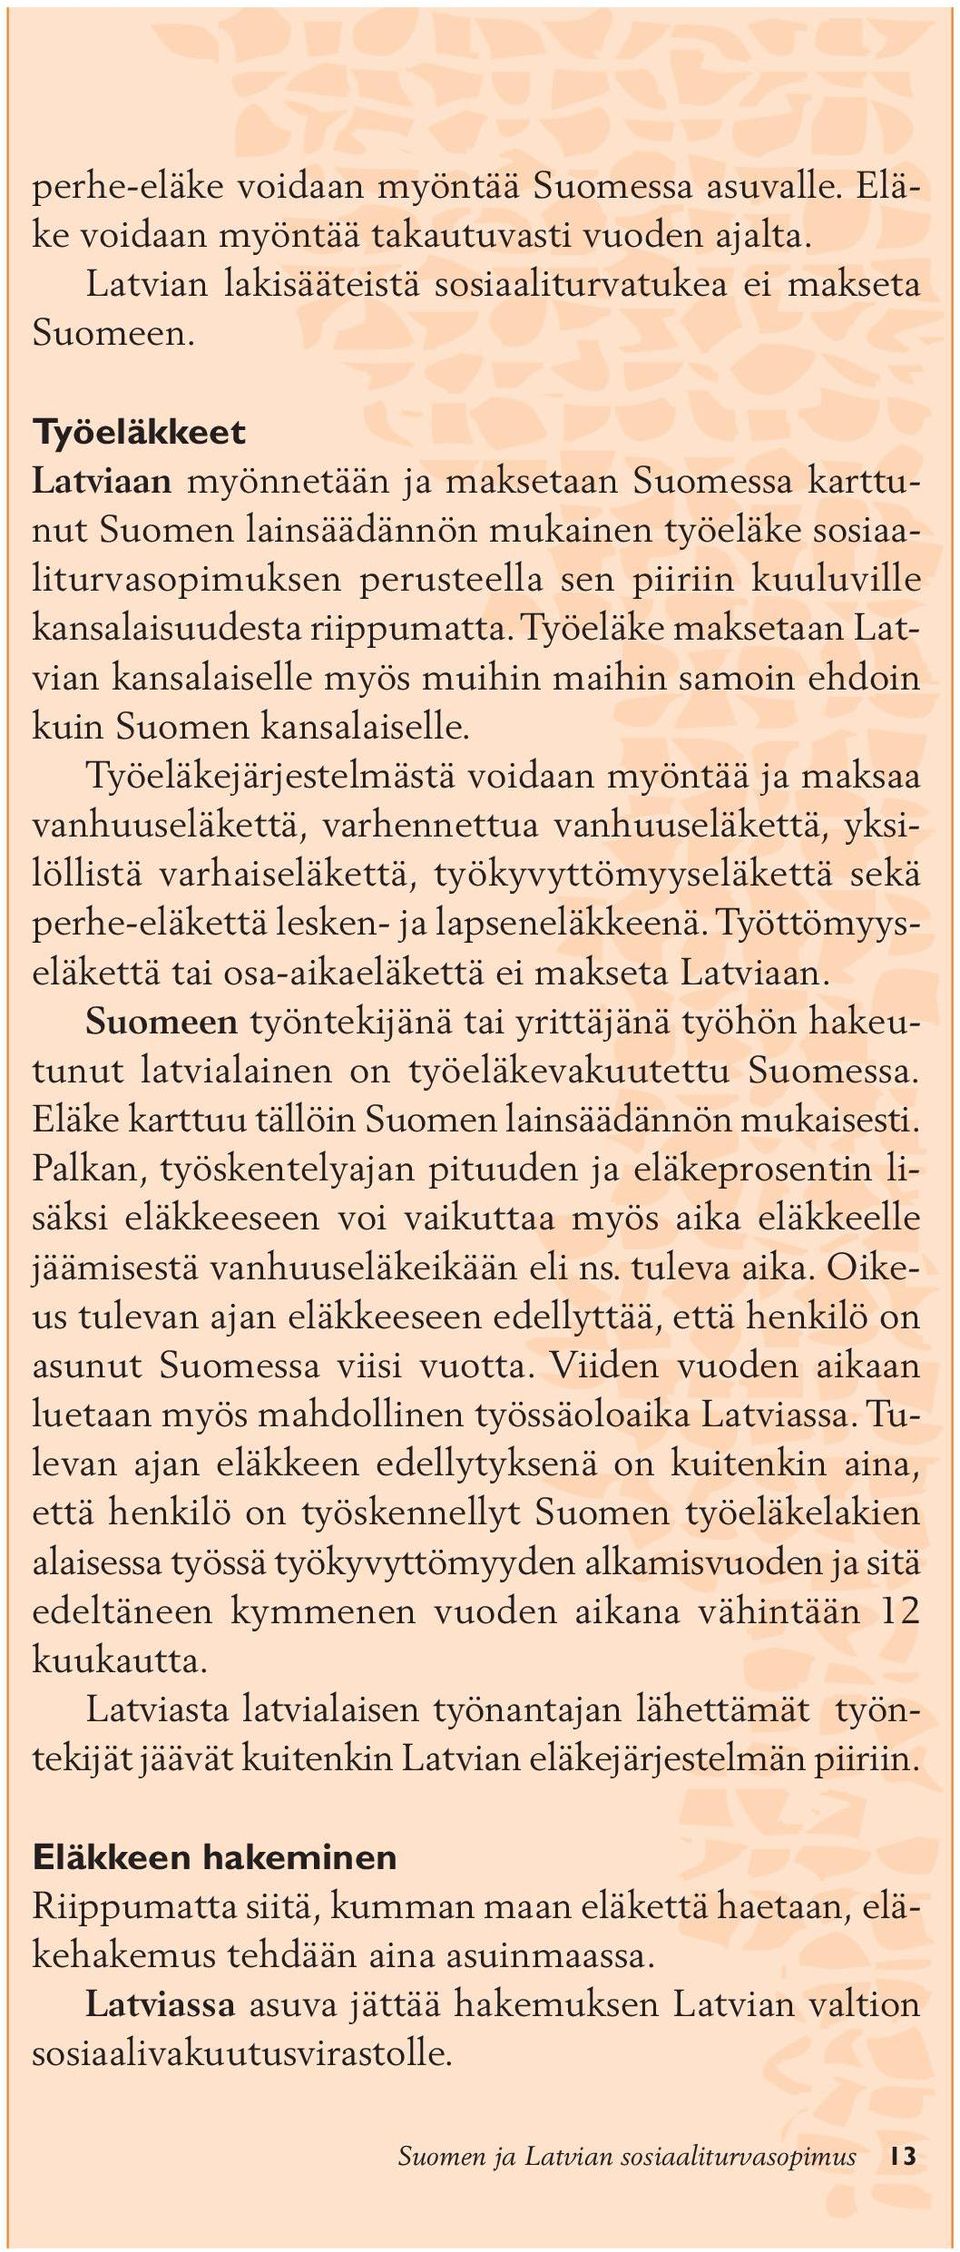 Työeläke maksetaan Latvian kansalaiselle myös muihin maihin samoin ehdoin kuin Suomen kansalaiselle.